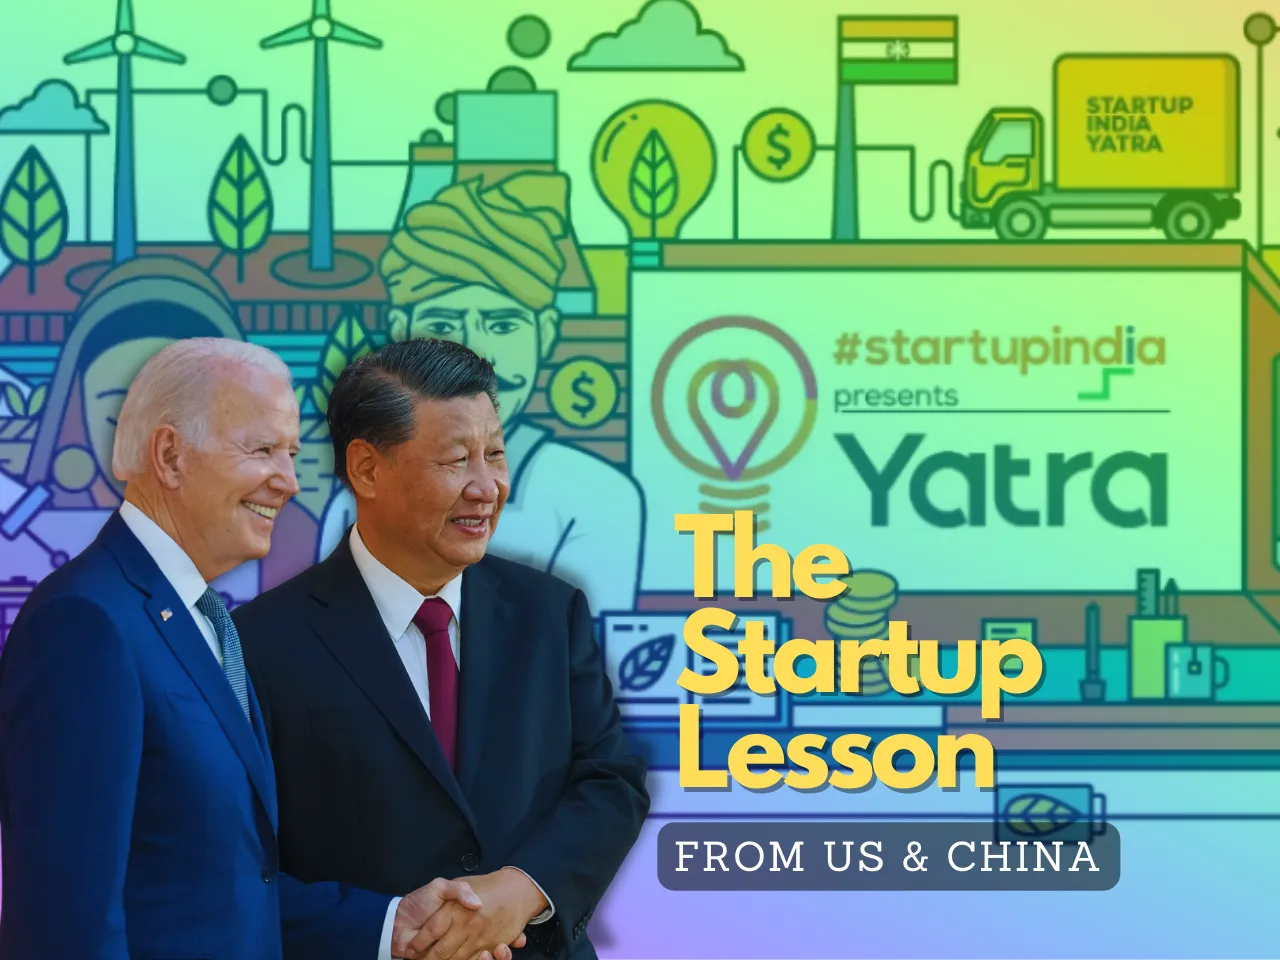 US & China Startup Scene 